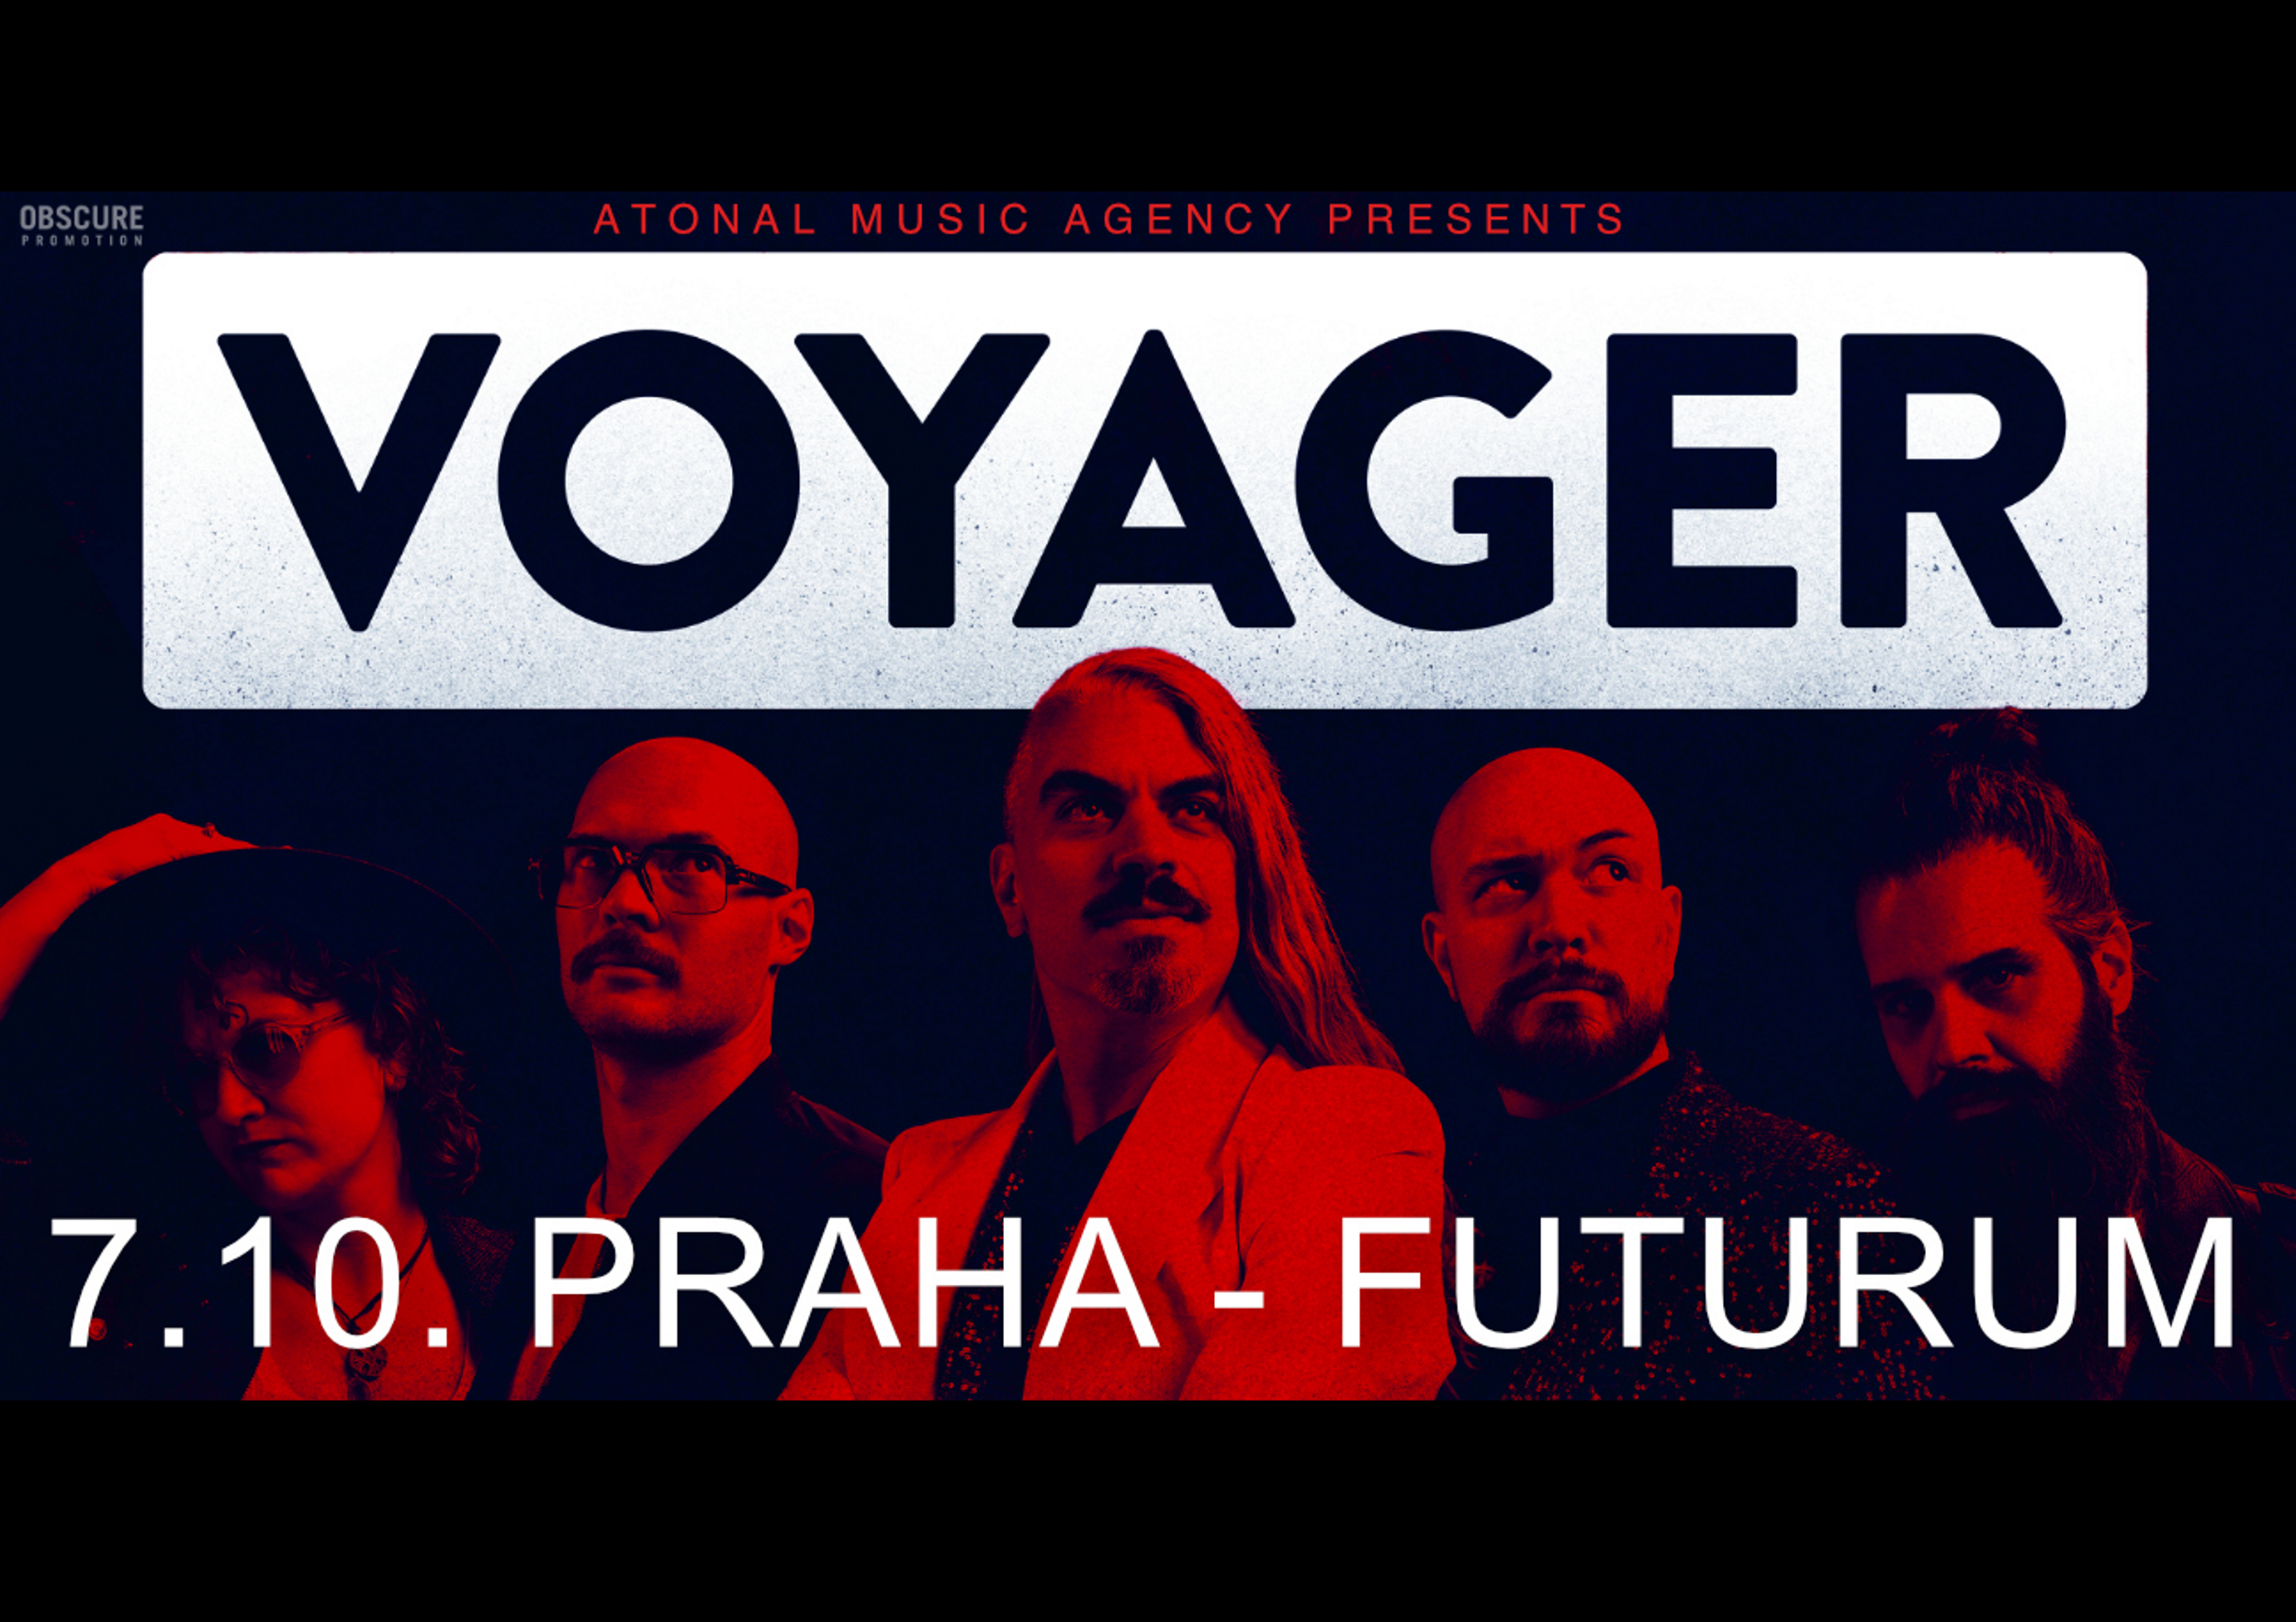 VOYAGER- Praha -Futurum Music Bar Praha 5 Zborovská 82/7, Praha 5 15000